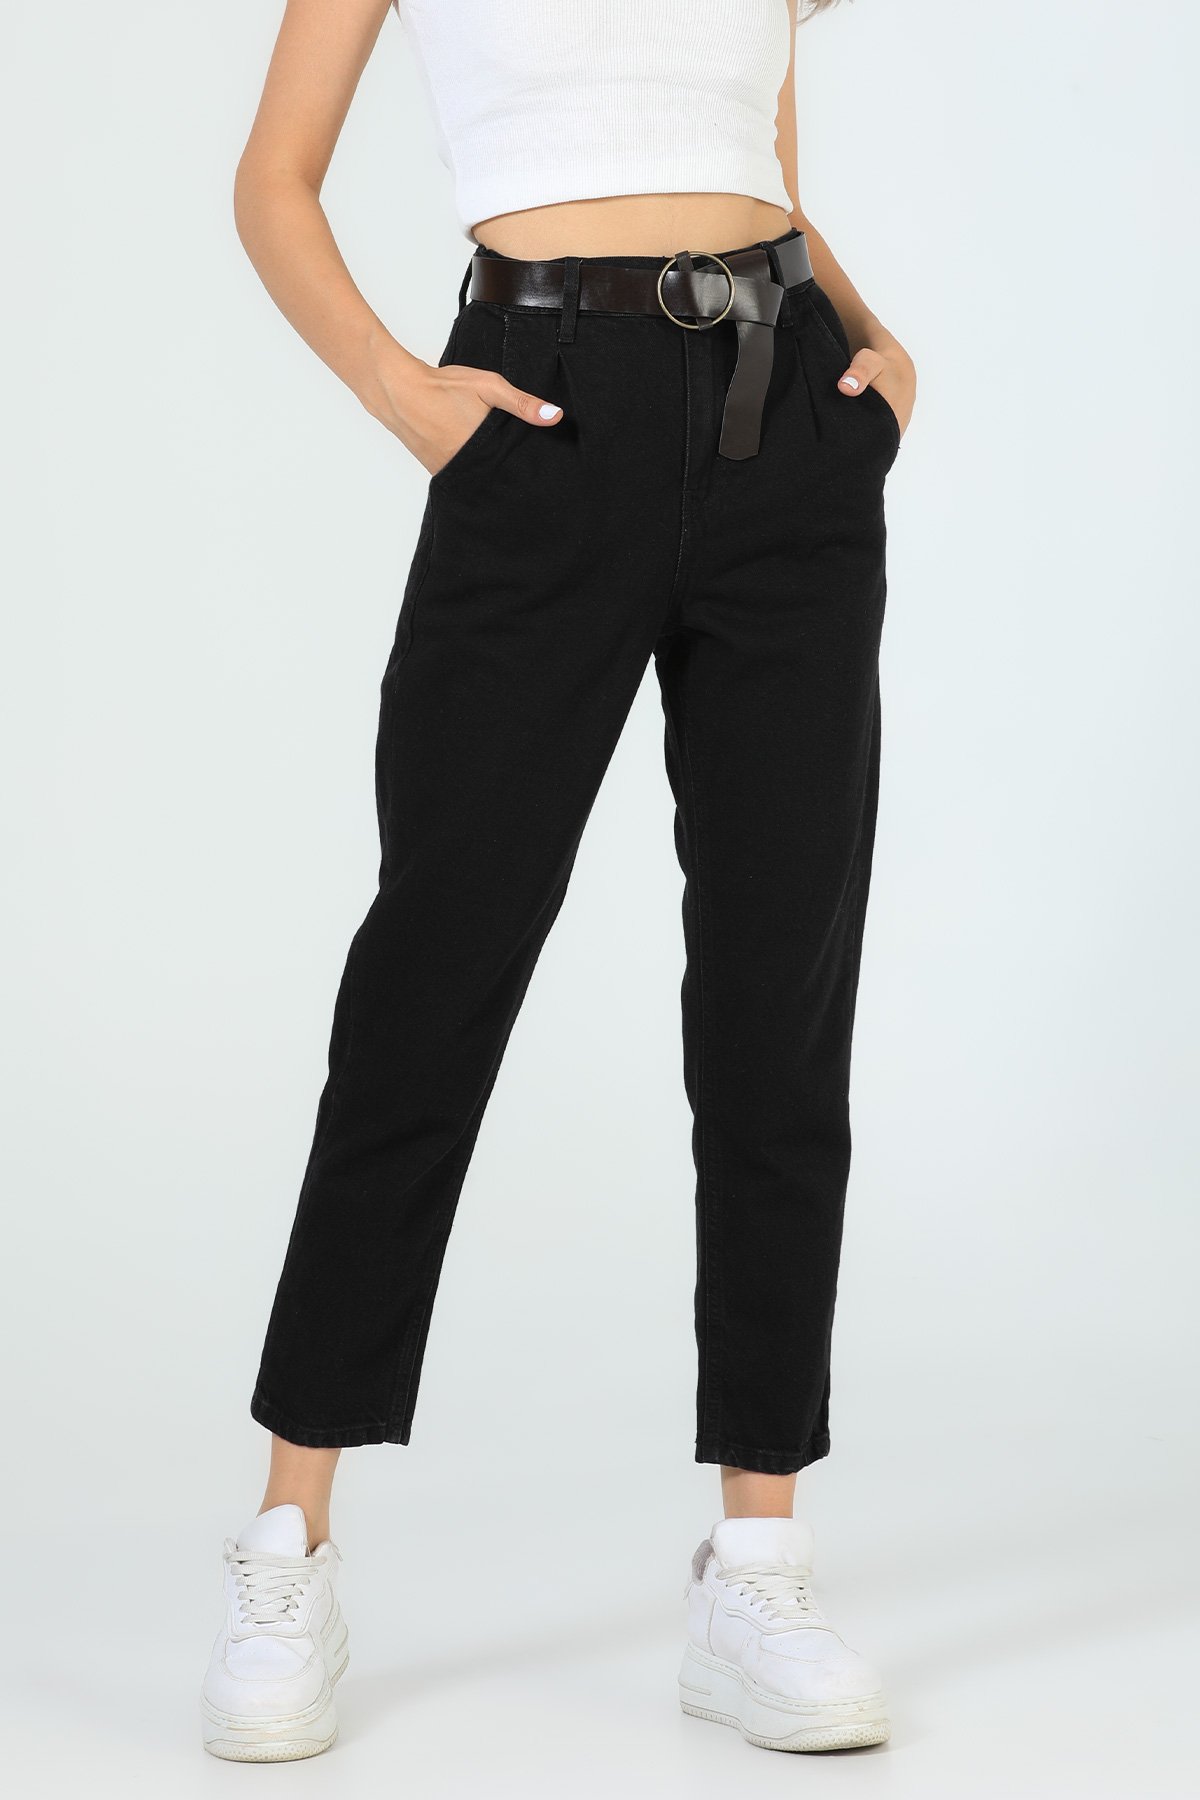 Kadın Yüksek Bel Kemerli Jeans Pantolon Siyah 504745 - tozlu.com